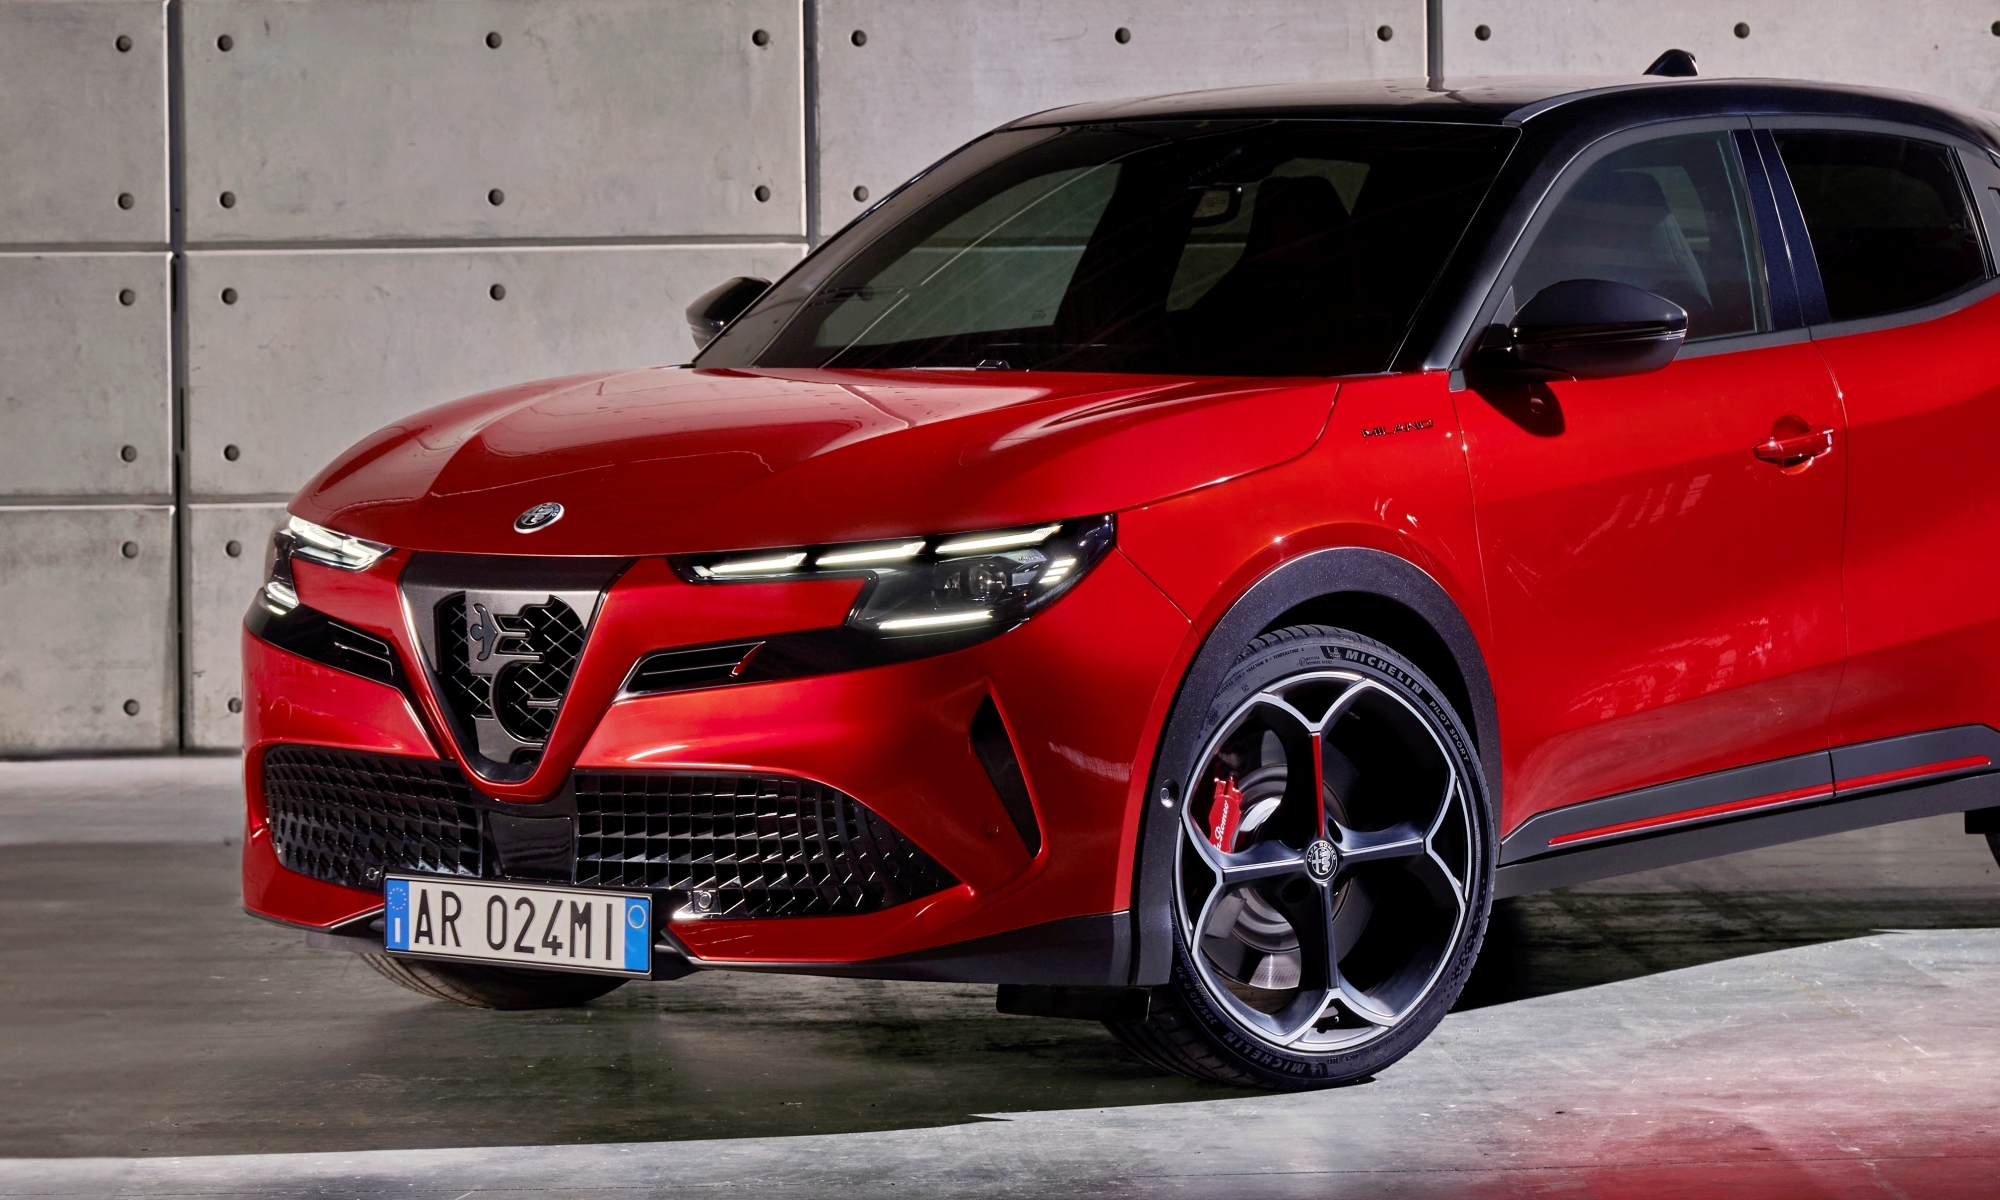 La marca italiana se estrena en el mundo eléctrico con un SUV pequeño.